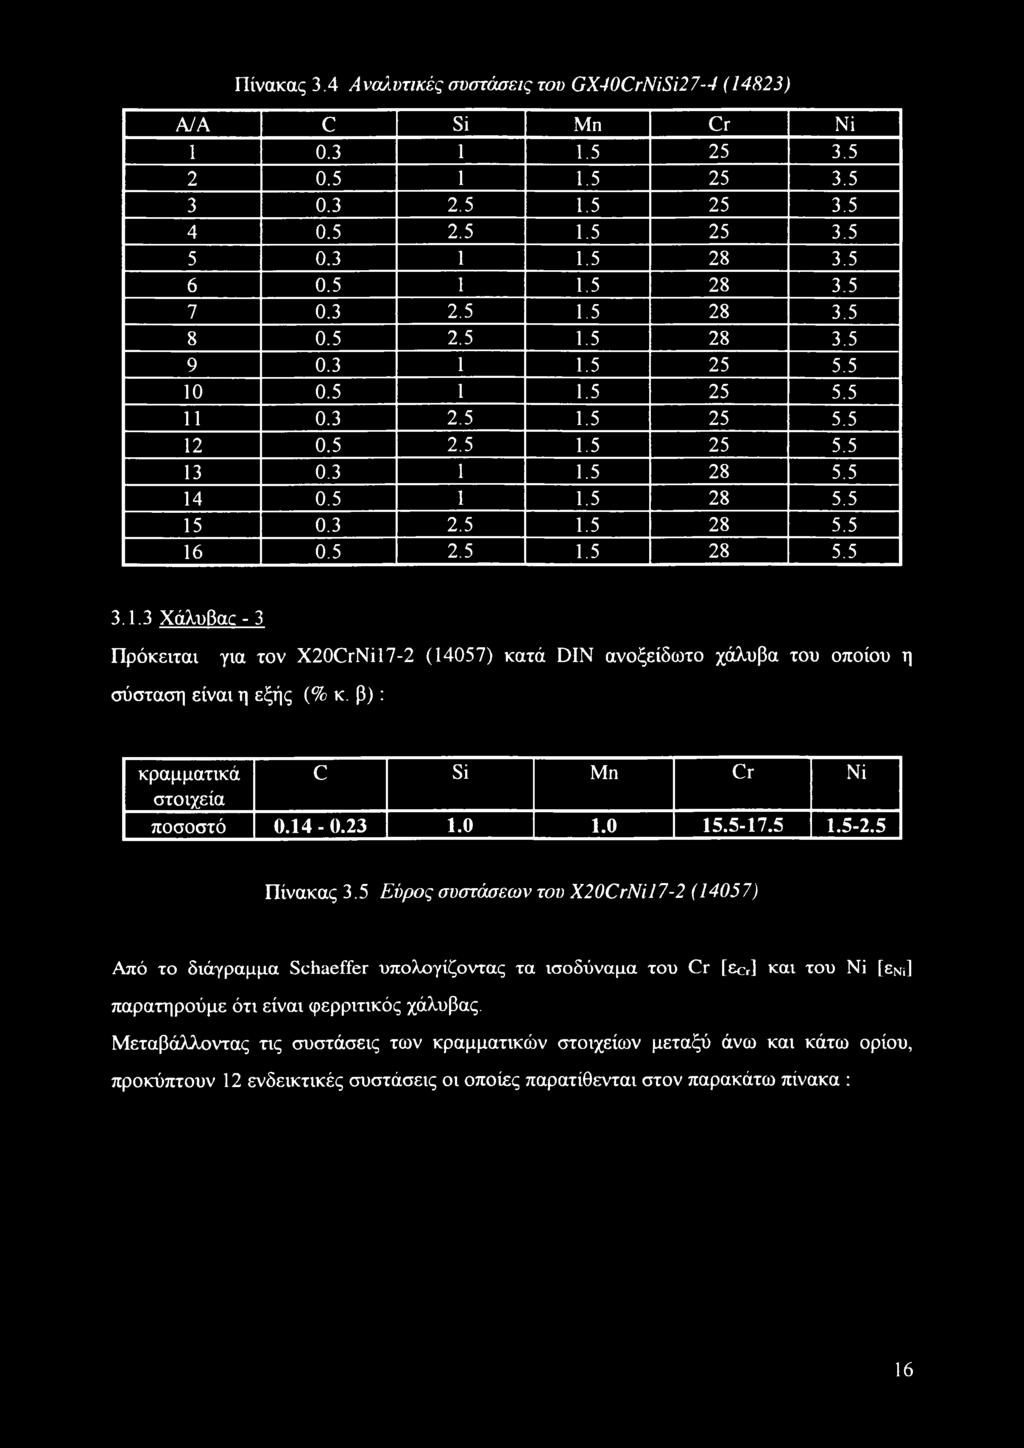 1.3 Χάλυβαο - 3 Πρόκειται για τον X20CrNil7-2 (14057) κατά DIN ανοξείδωτο χάλυβα του οποίου η σύσταση είναι η εξής (% κ. β): κραμματικά C Si Μη Cr Νΐ στοιχεία ποσοστό 0.14-0.23 1.0 1.0 15.5-17.5 1.